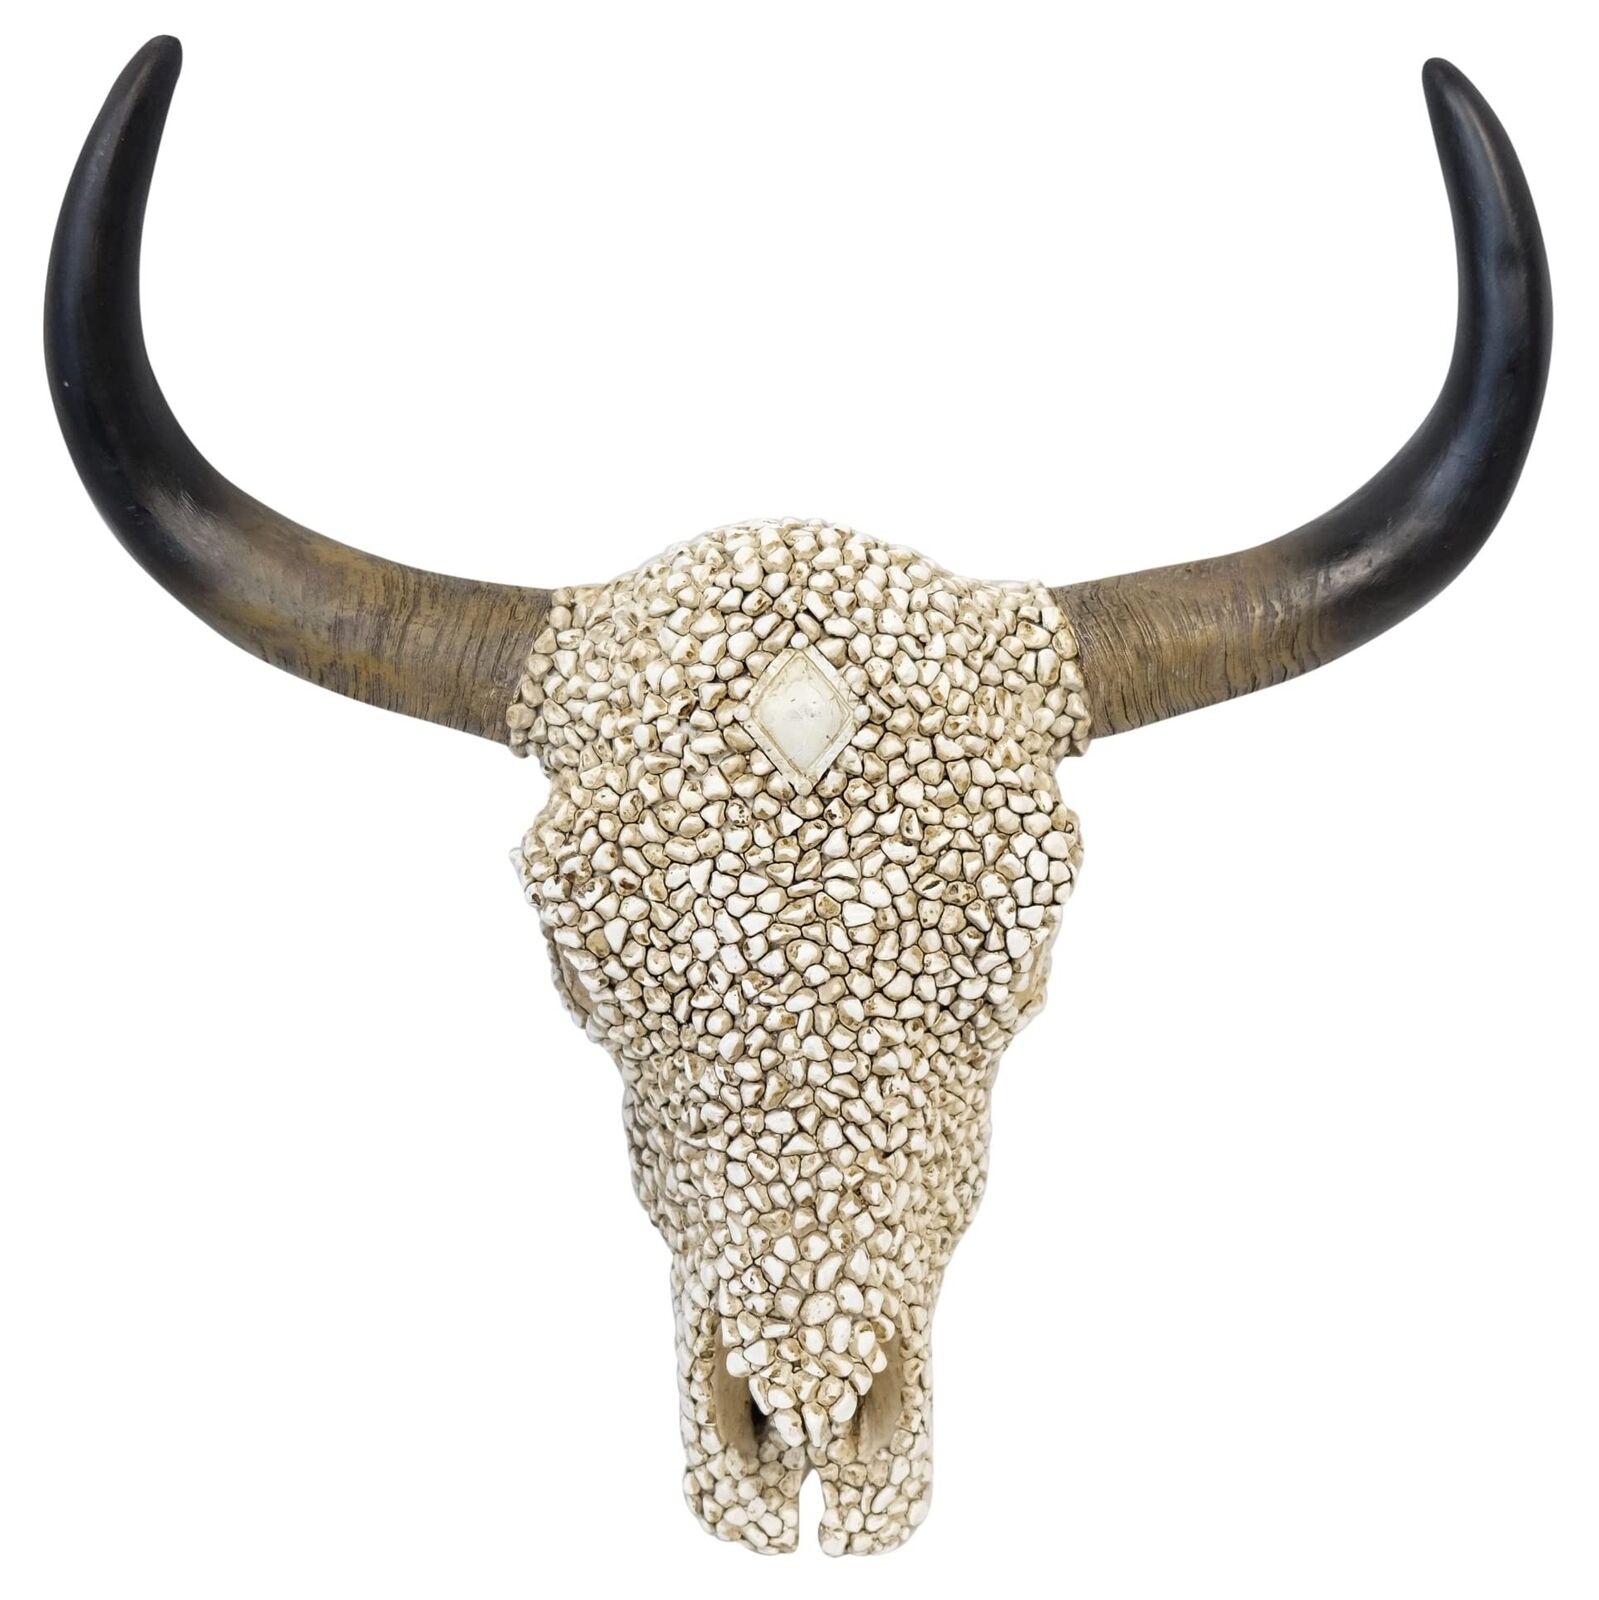 Southwestern White Pebble Longhorn Bull Cow Steer Skull with Golden Horn Acce...